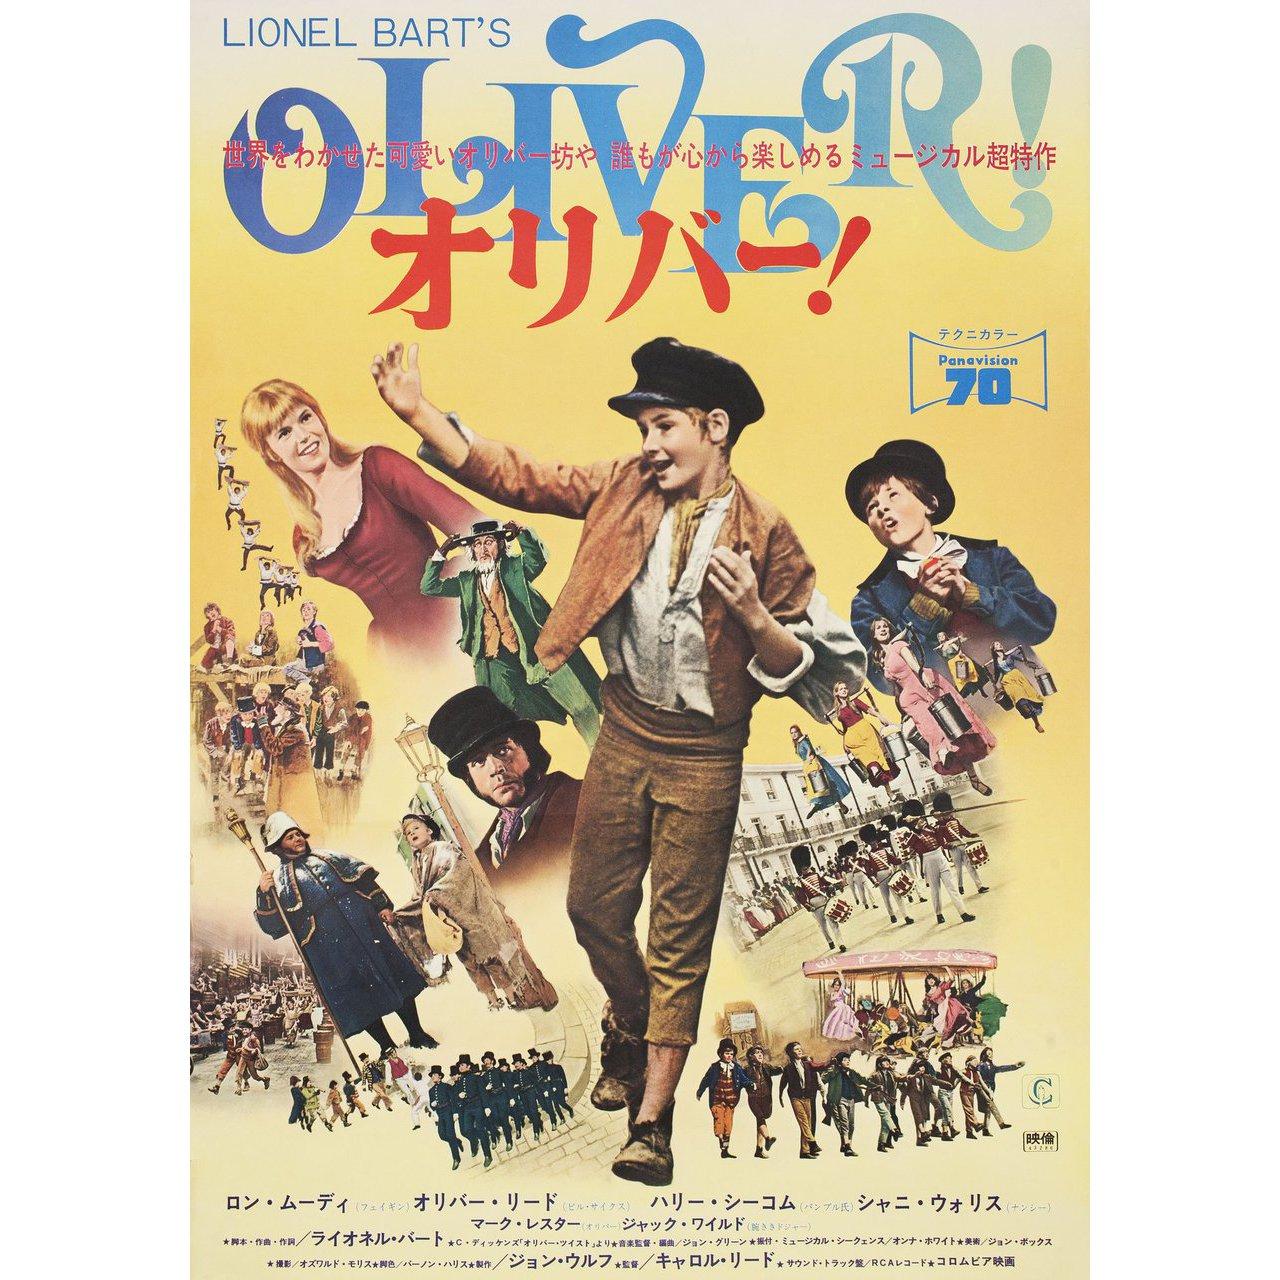 Originales japanisches B2-Plakat von 1968 für den Film Oliver! unter der Regie von Carol Reed mit Ron Moody / Shani Wallis / Oliver Reed / Harry Secombe. Sehr guter Zustand, gefaltet. Viele Originalplakate wurden gefaltet herausgegeben oder